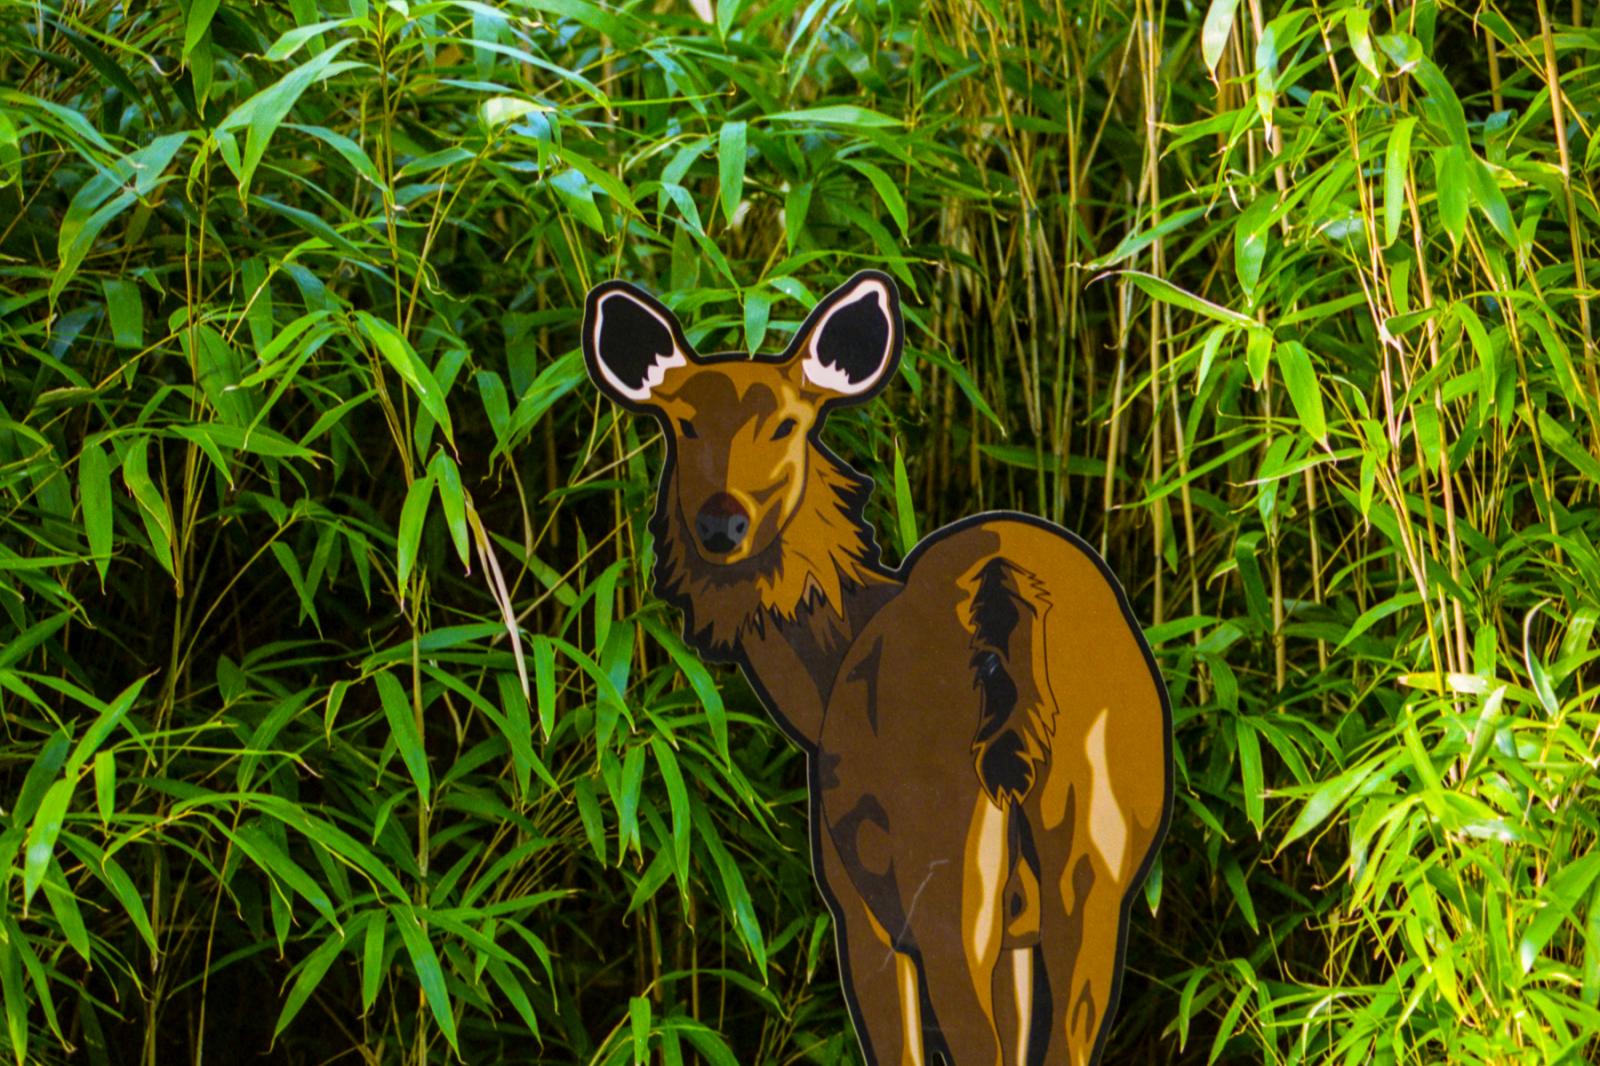 Deer exhibit, Smithsonian National Zoo. Washington, DC.